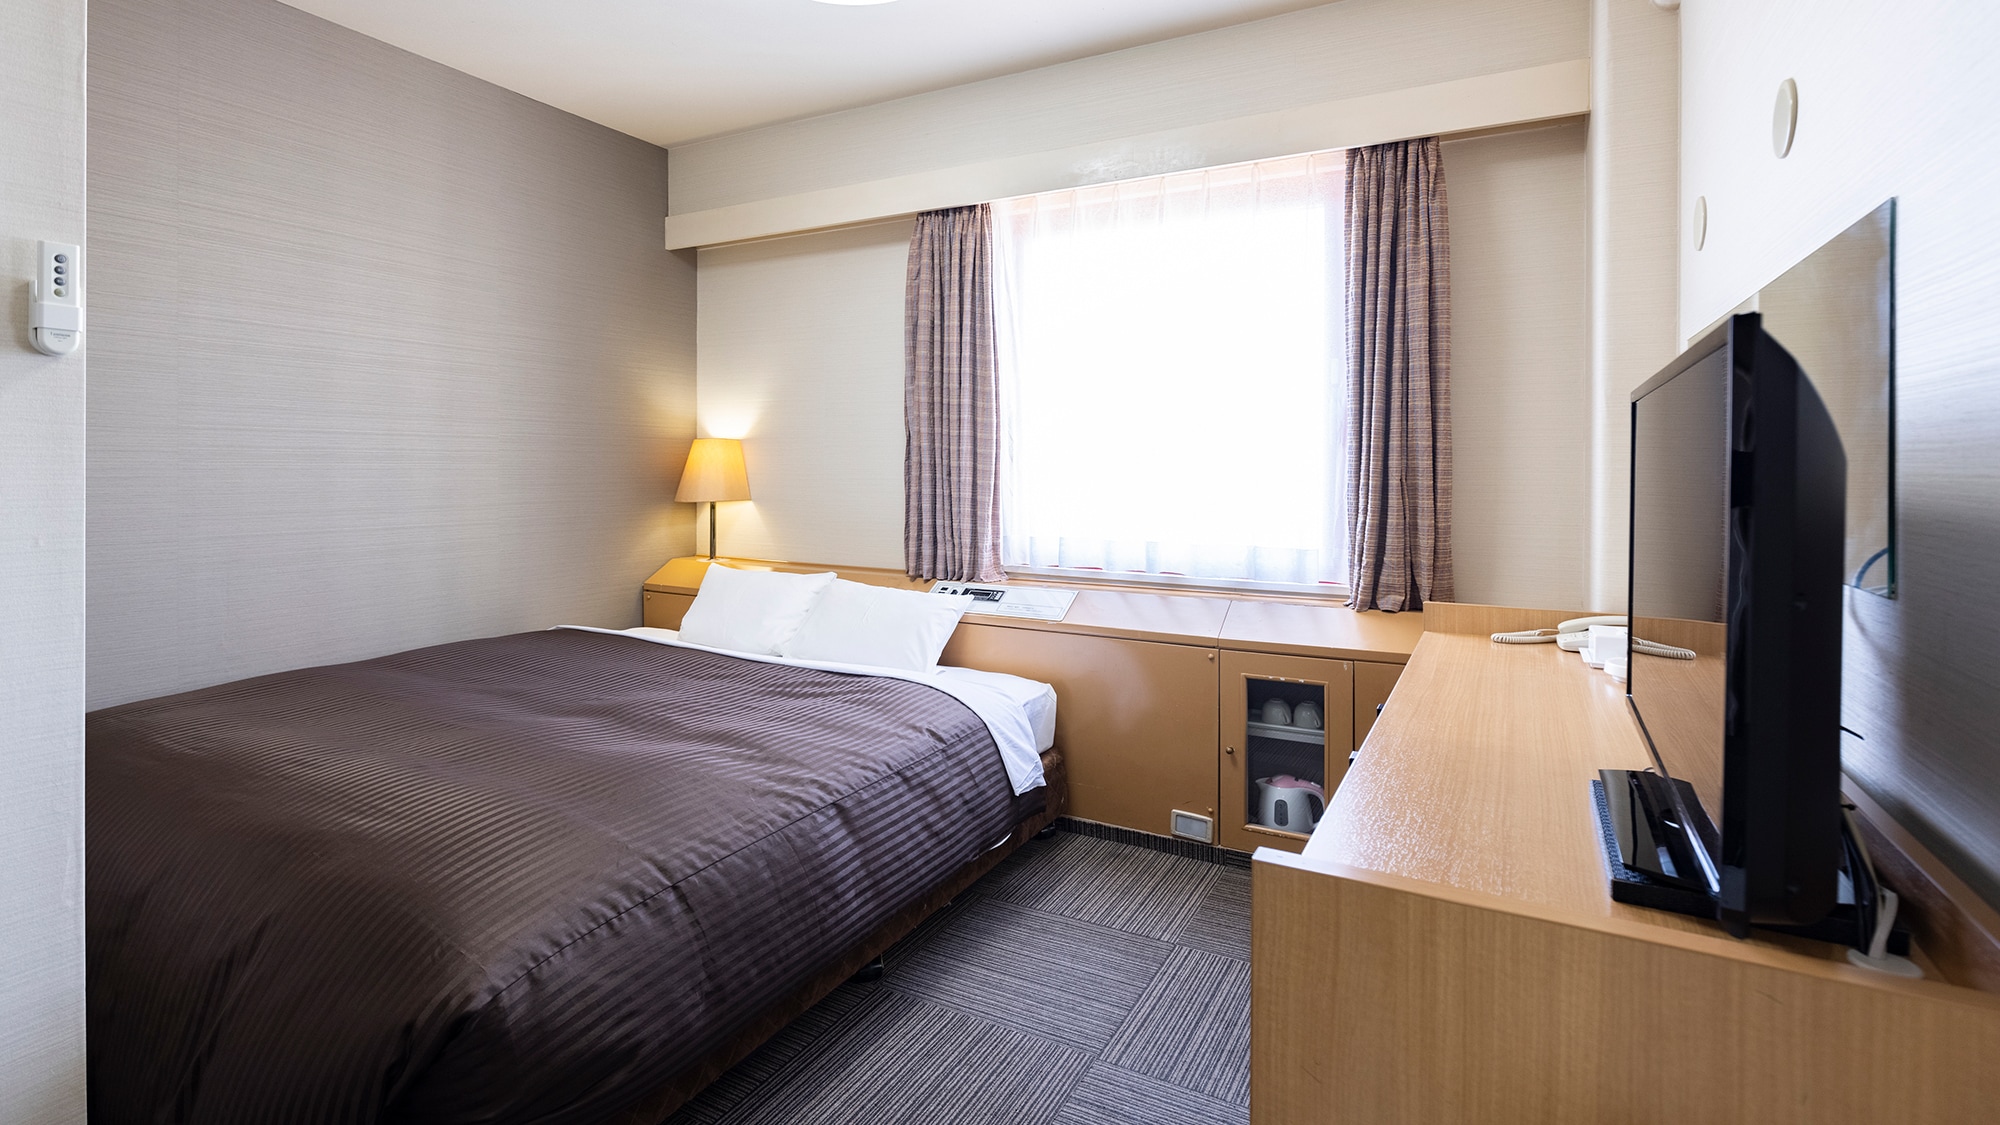 Standard double room [18㎡, bed width 180cm]